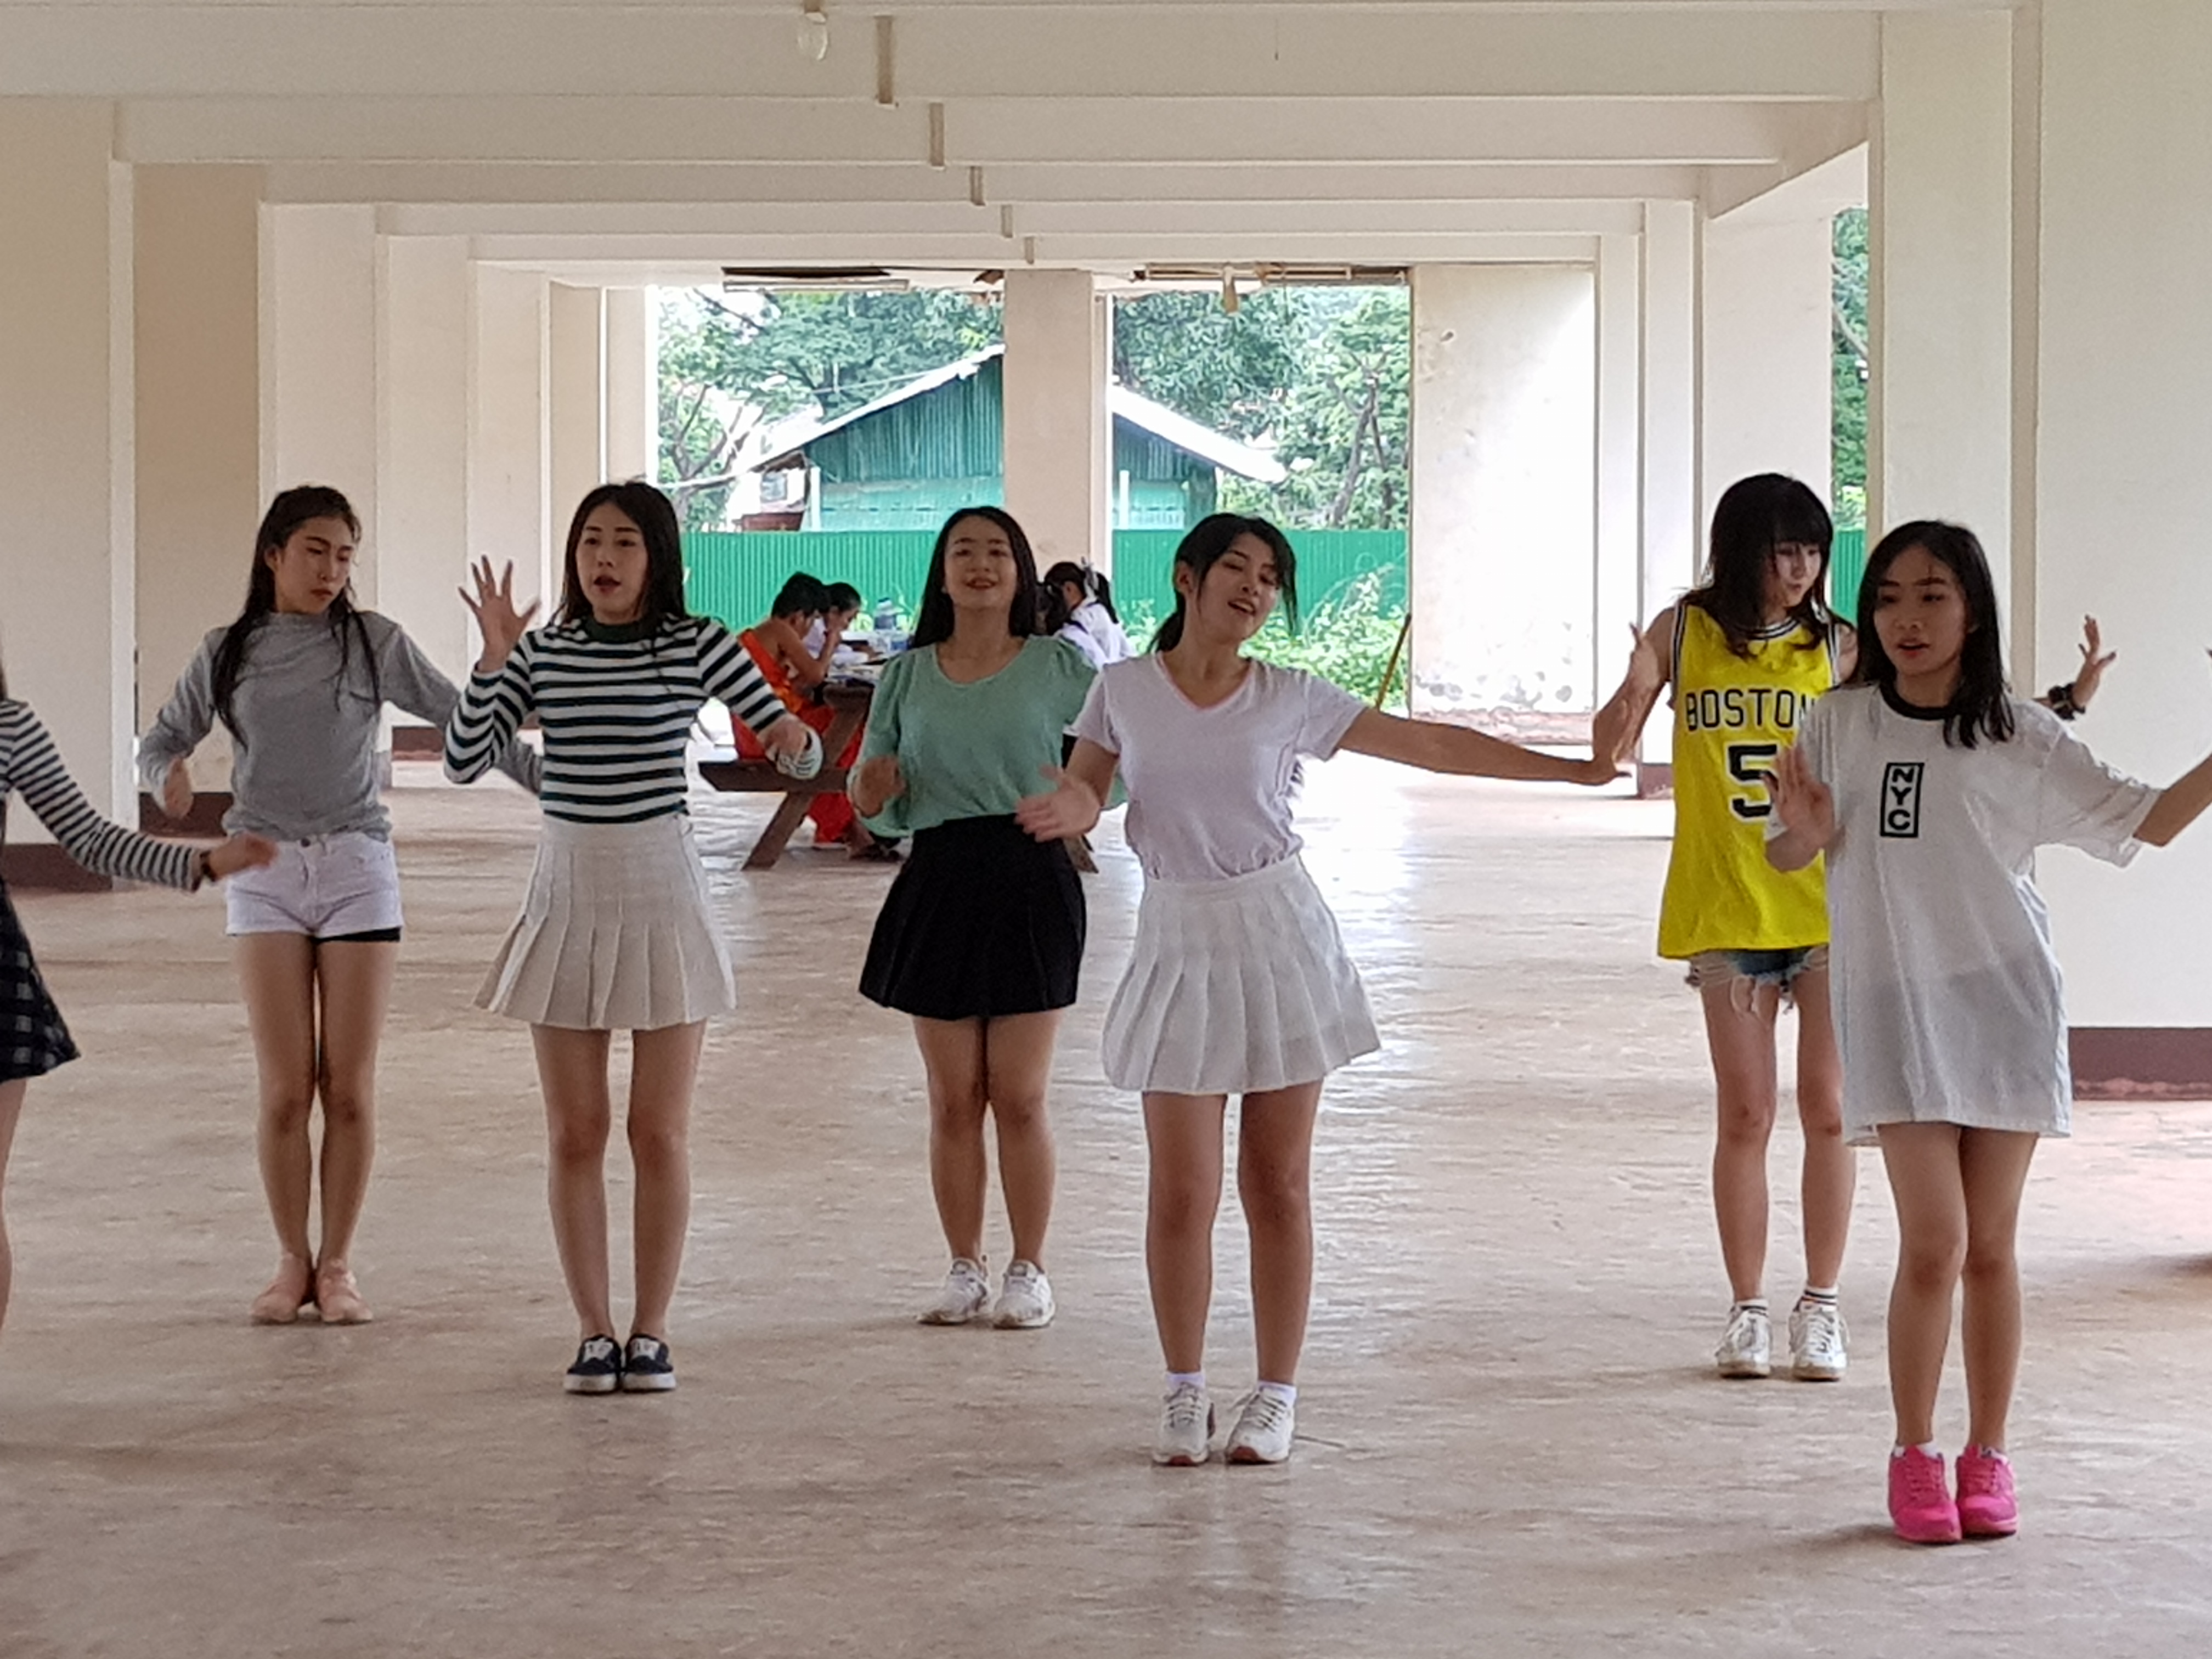 라오스 국립대에서 K-pop에 맞춰 커버 댄스를 연습하는 학생들. (조성원 기자)